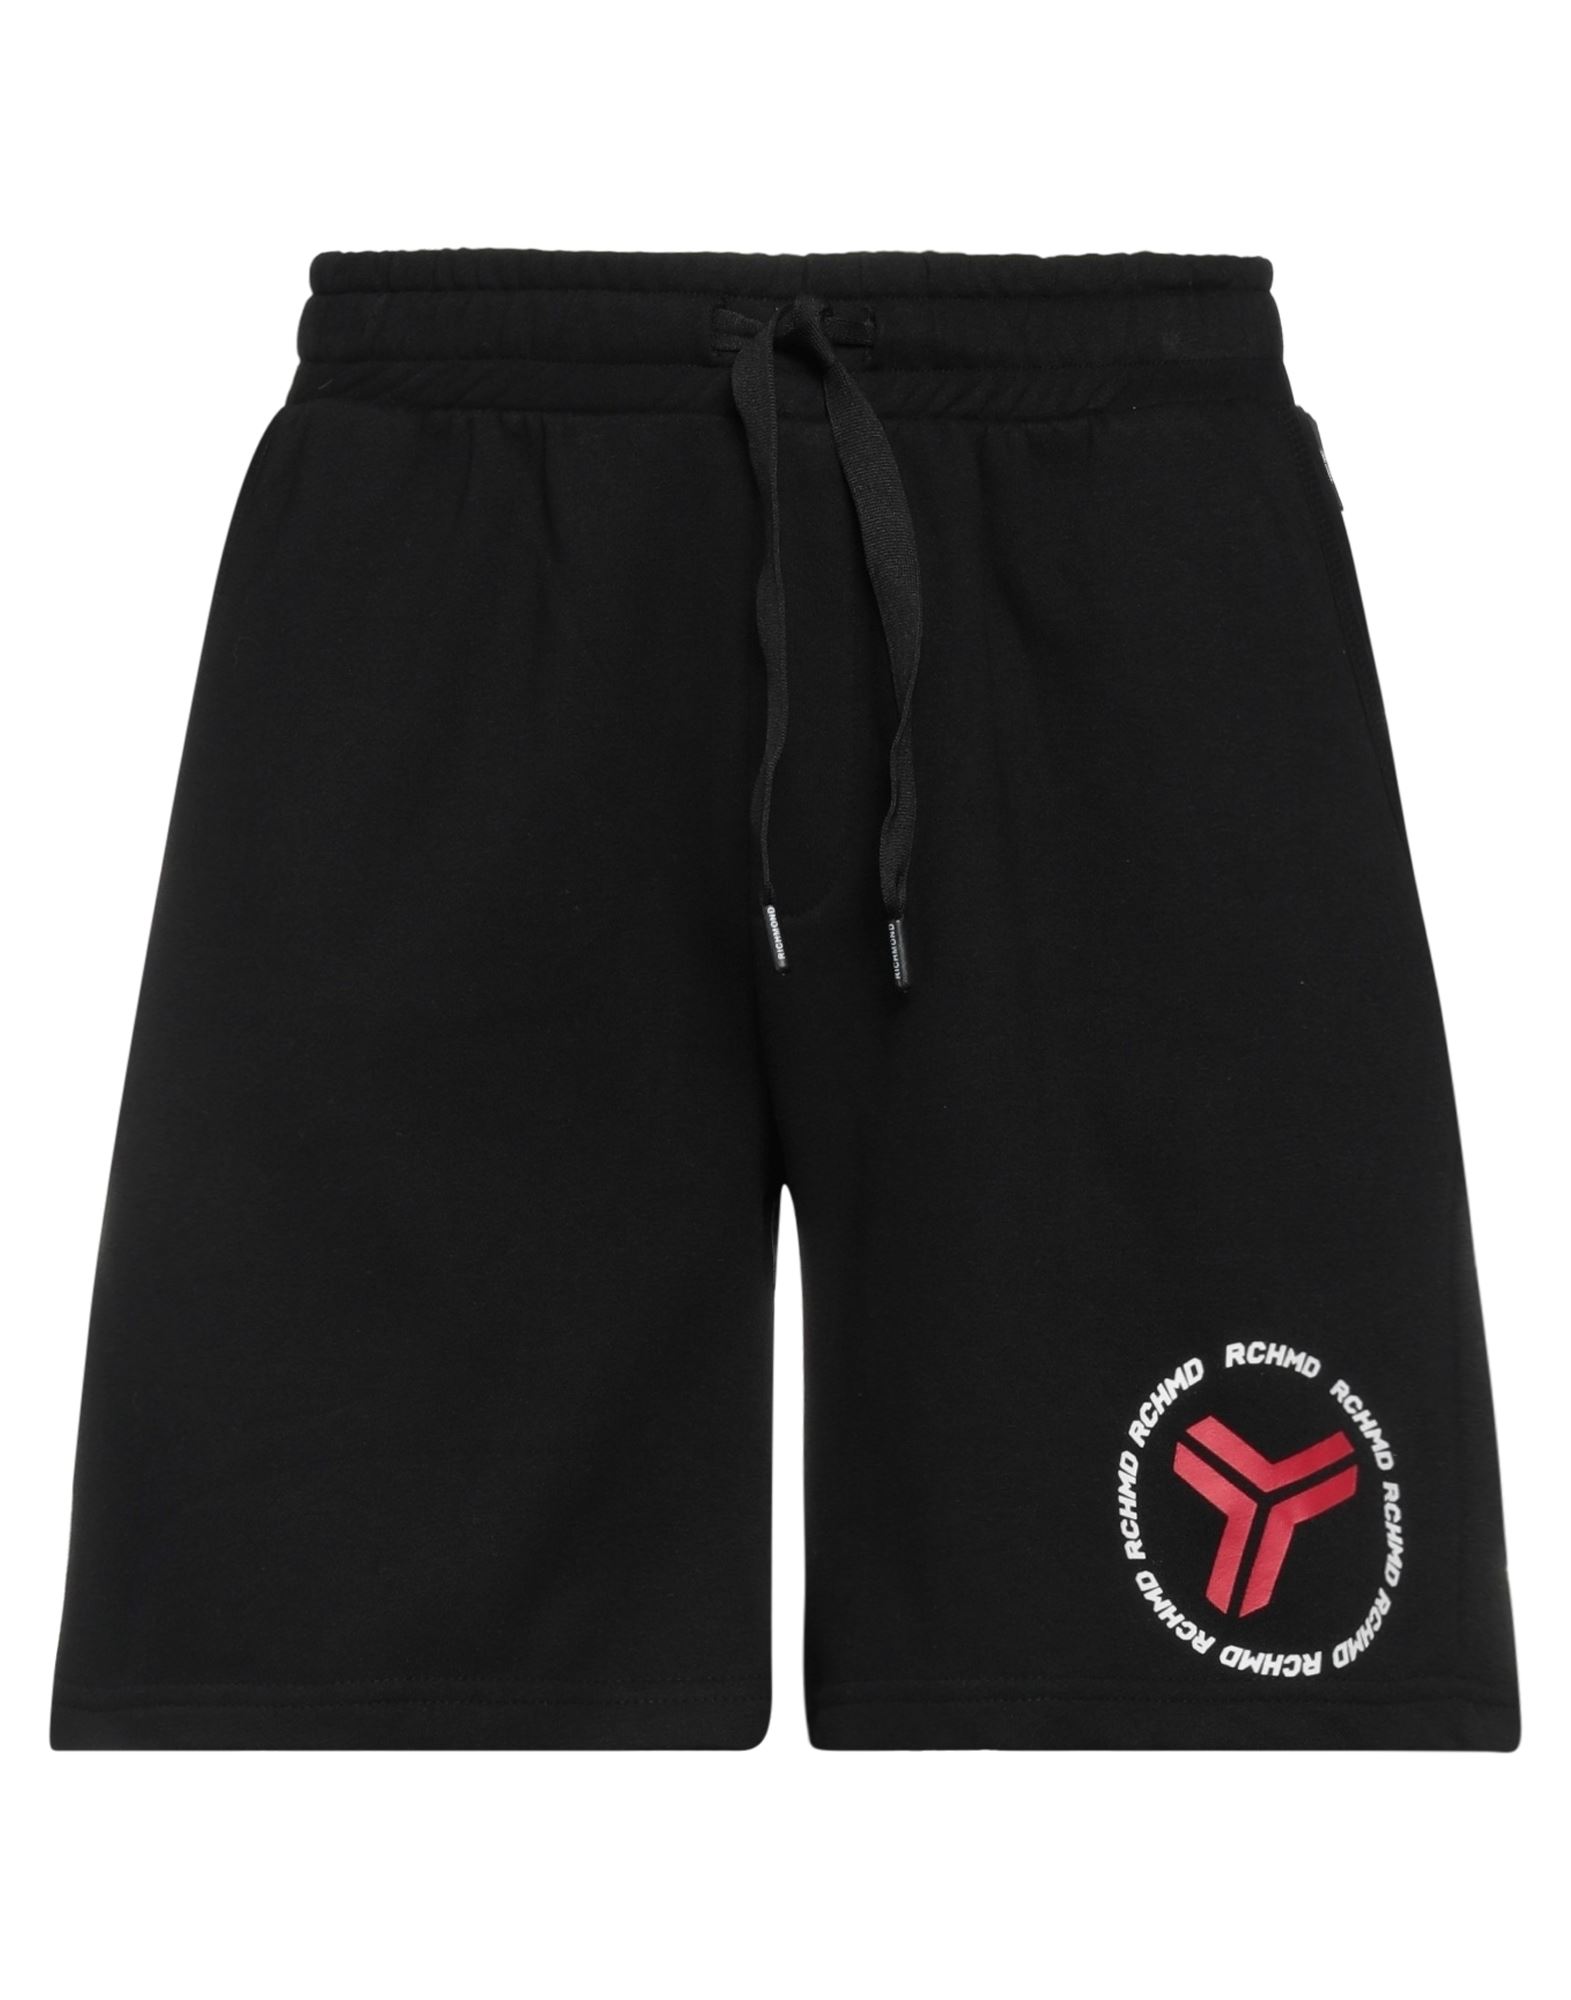 Richmond Man Shorts & Bermuda Shorts Black Size L Cotton